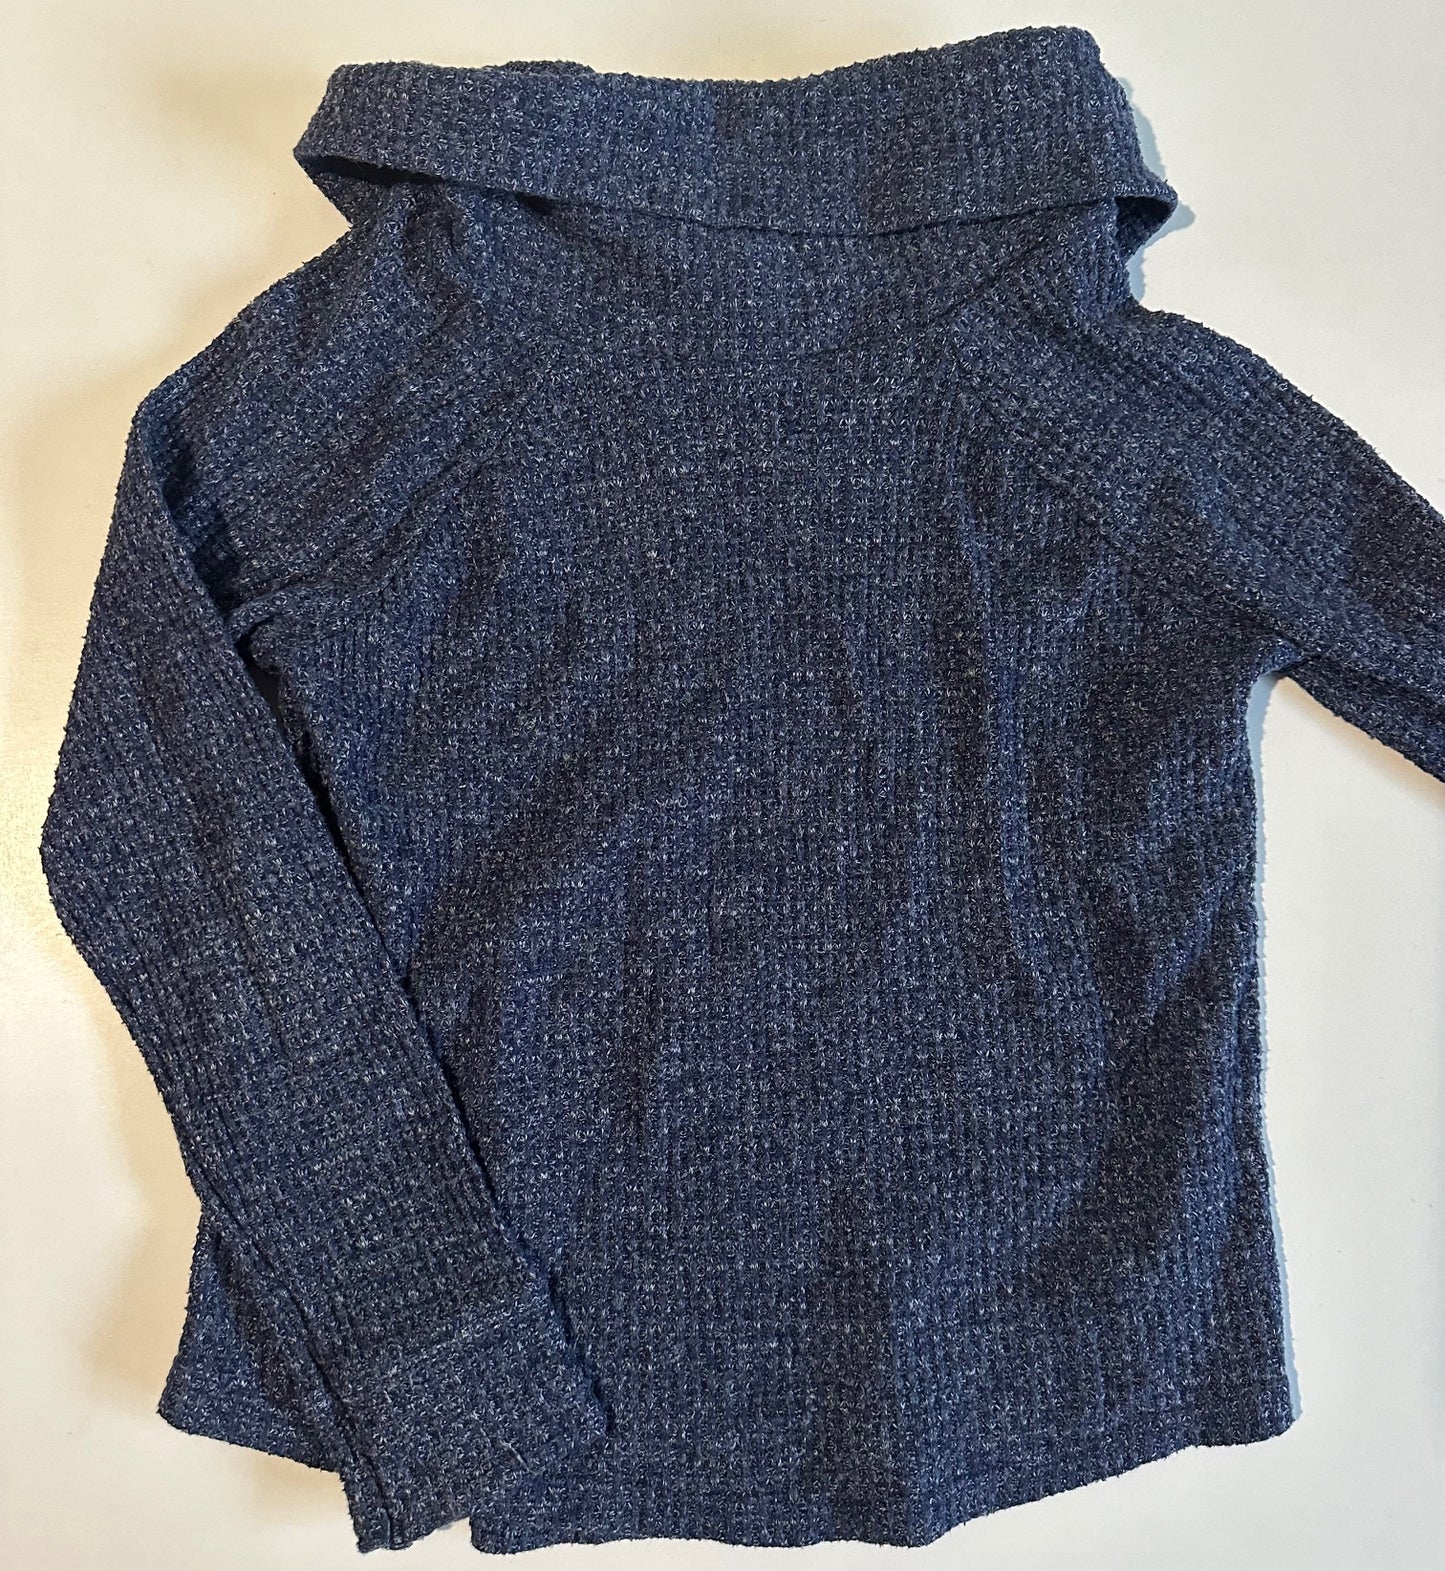 Old Navy, Dark Blue Sweater - Size 5T